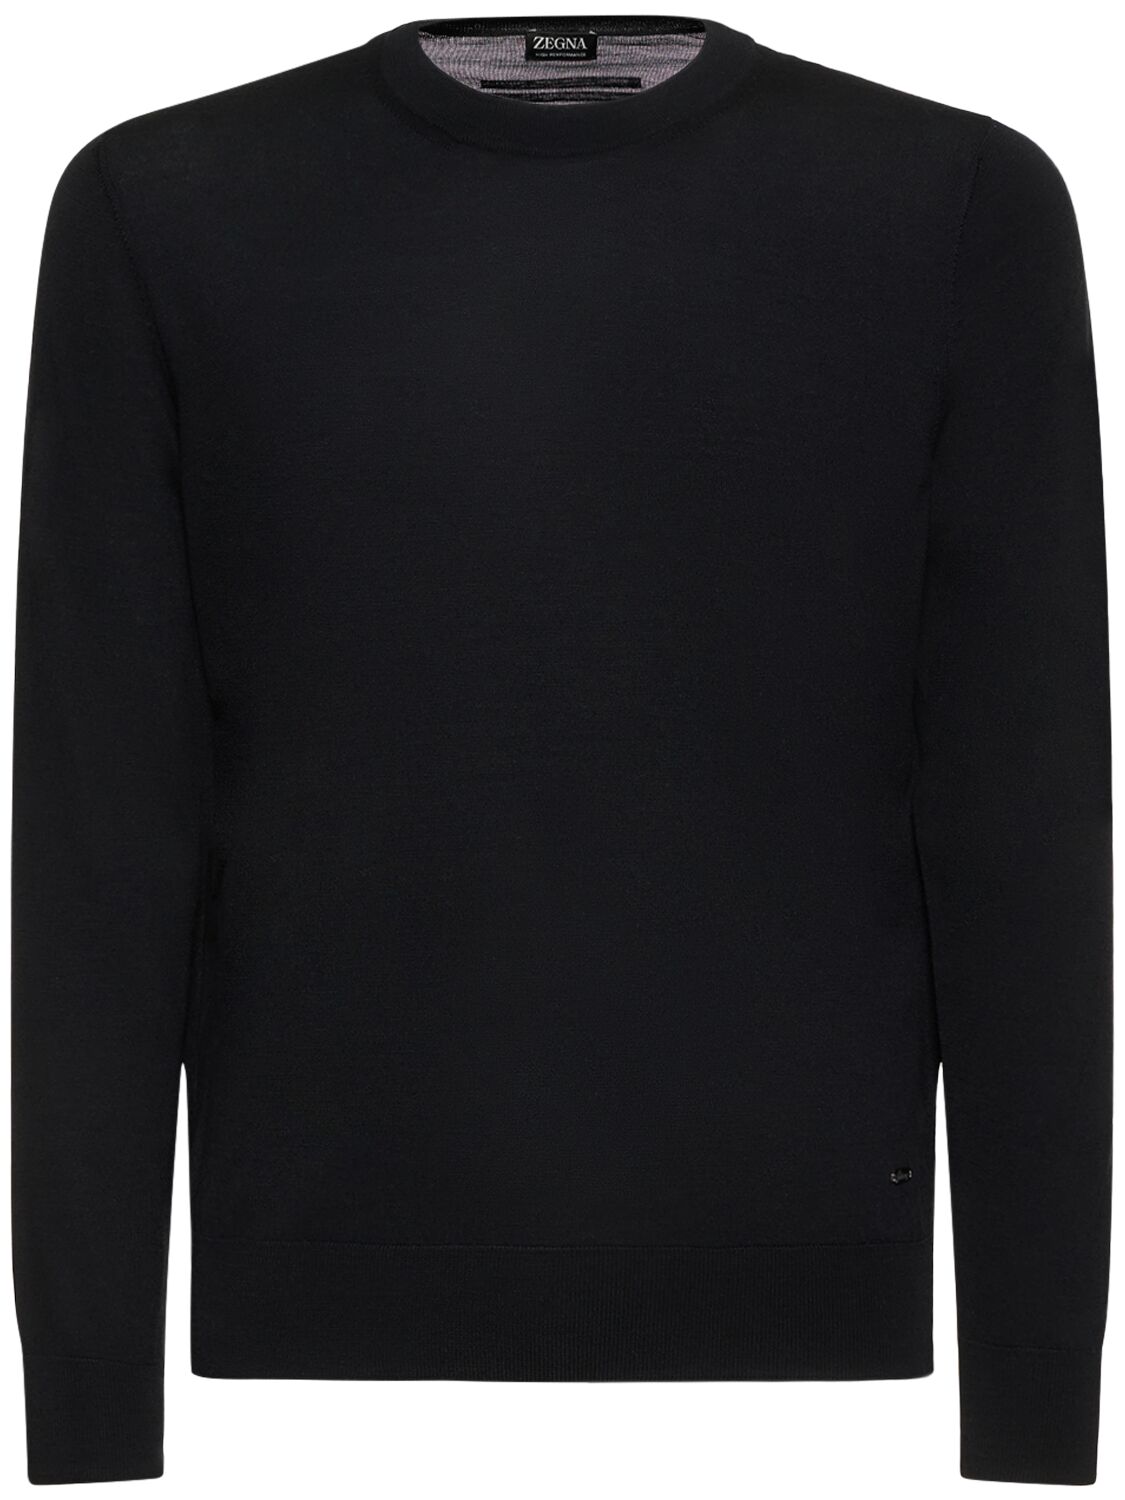 Fine Wool Crewneck Sweater – MEN > CLOTHING > KNITWEAR